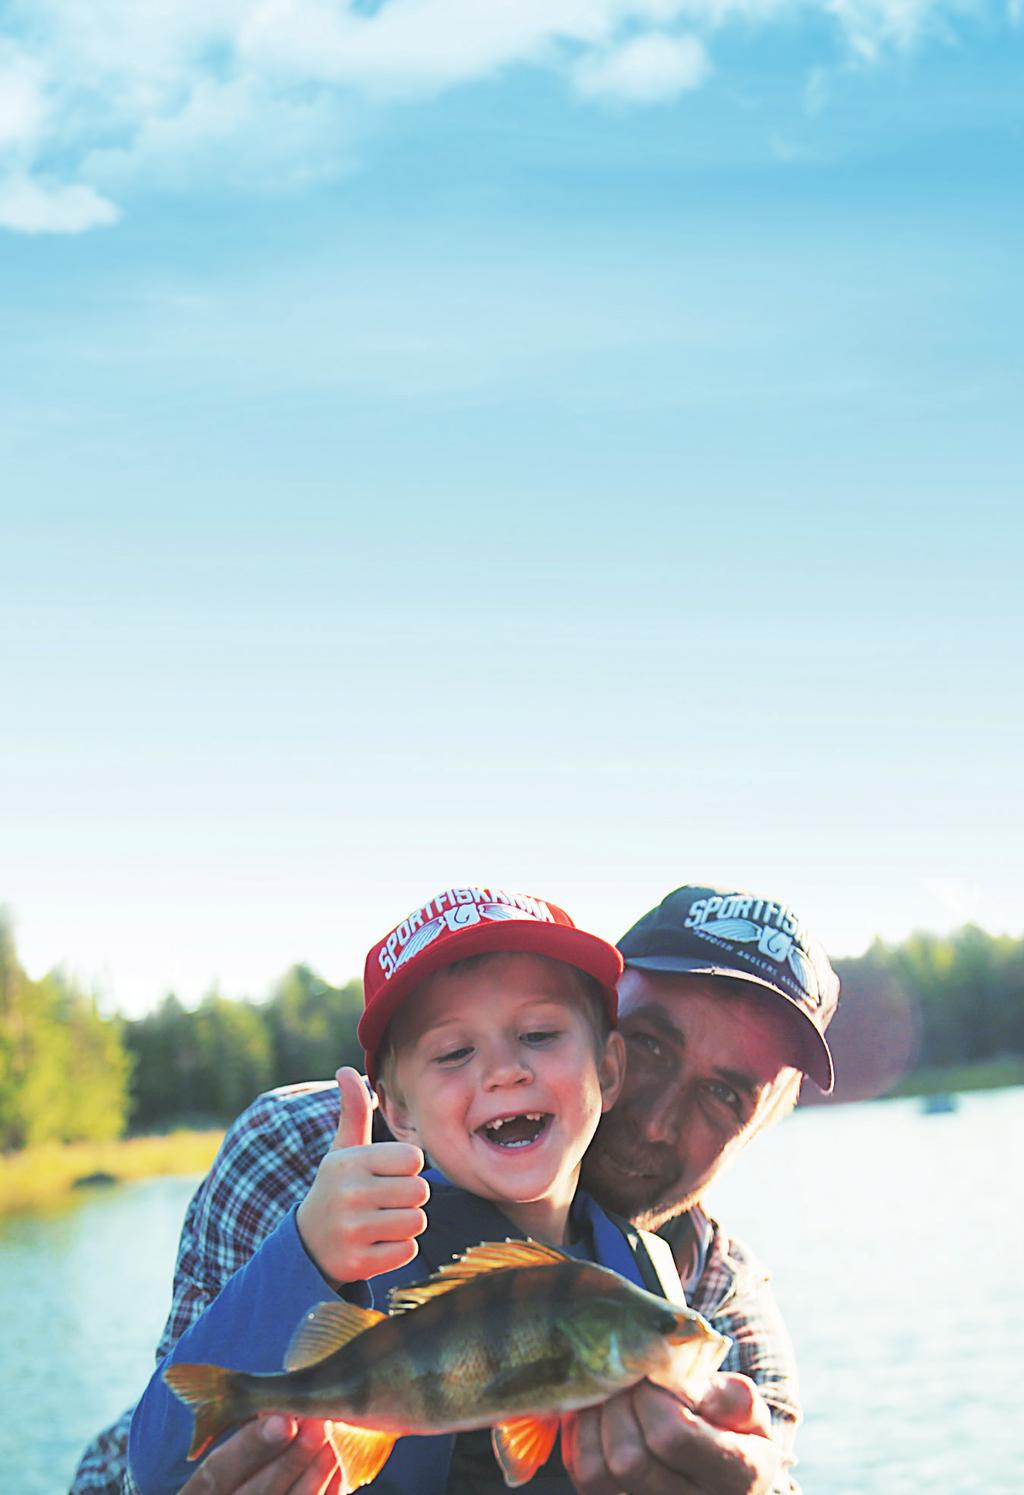 İsveç te Balıkçılık Balıkçılık, dört mevsim tadını çıkarabileceğimiz eğlenceli ve heyecan verici bir hobidir.